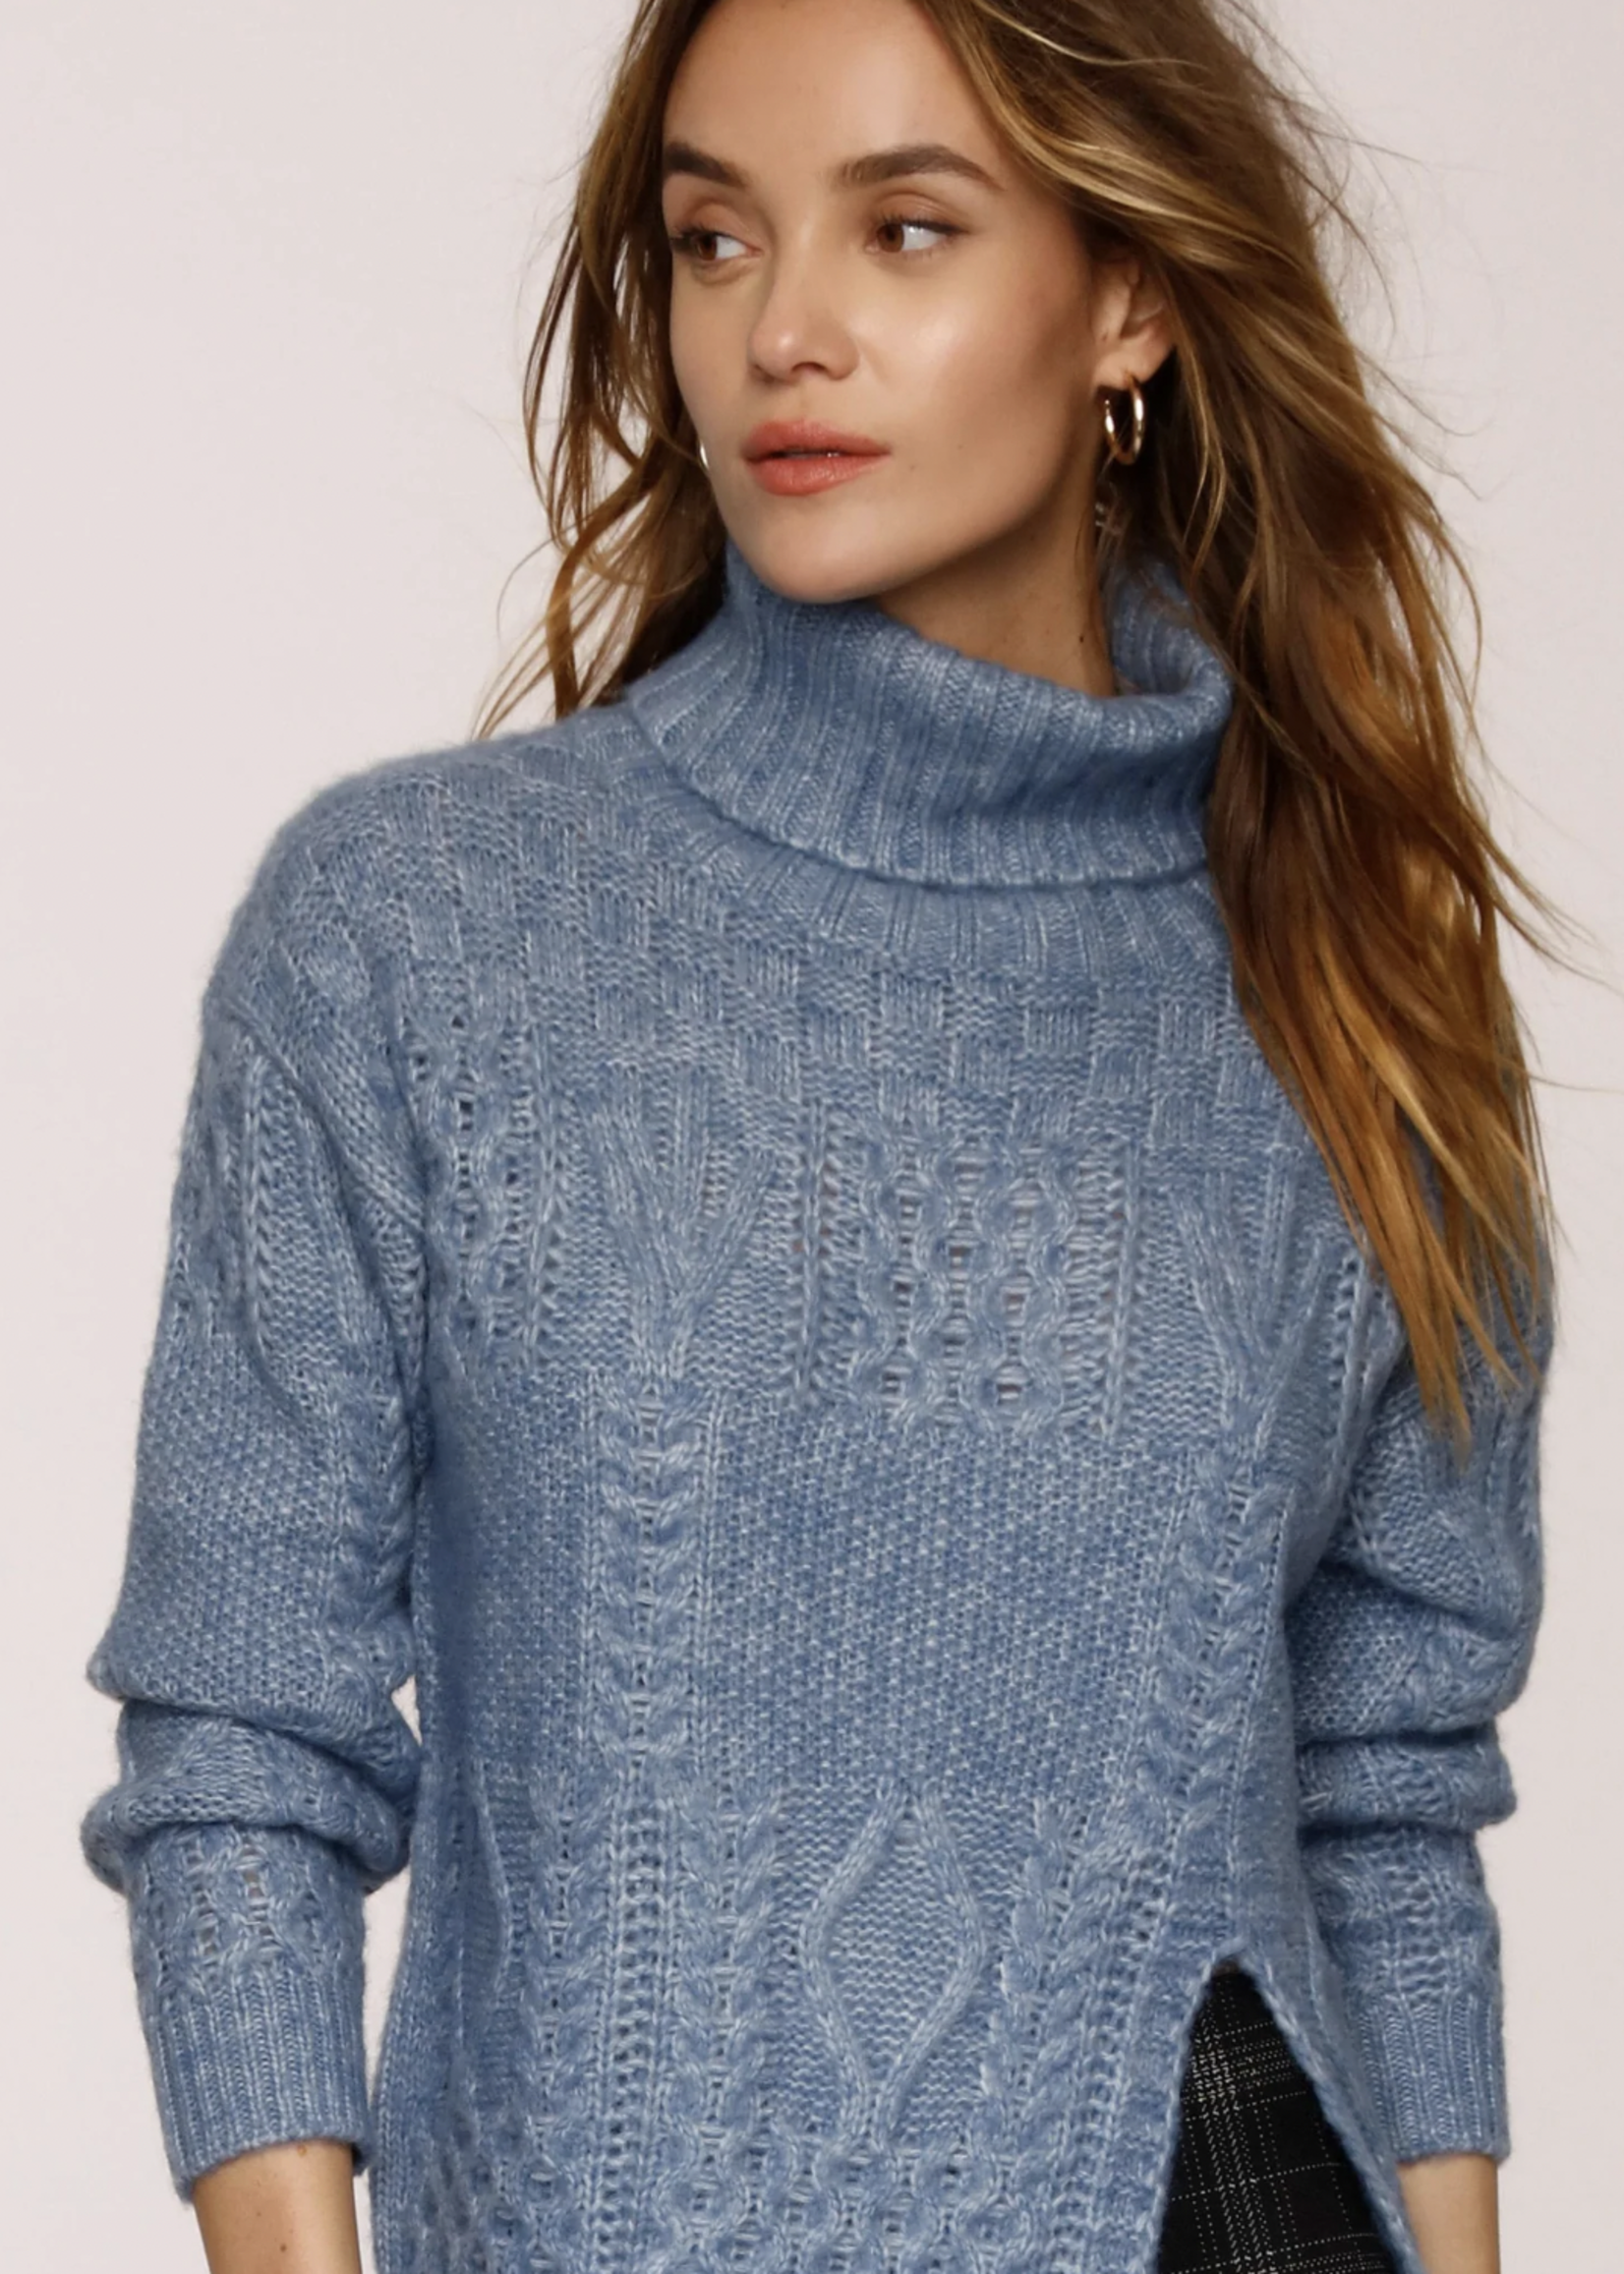 Elitaire Boutique Hudson Blue Sweater